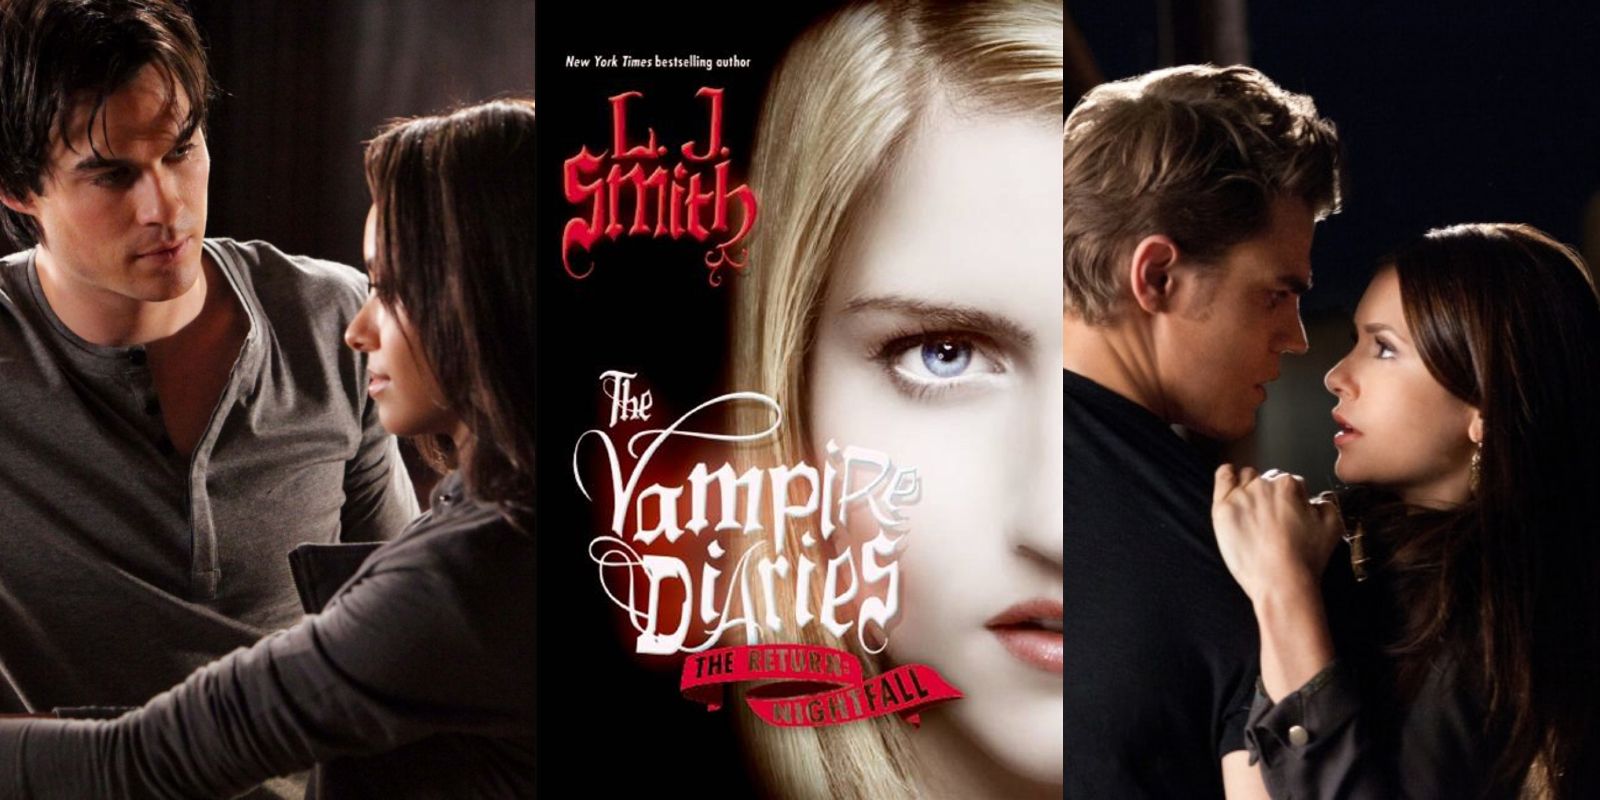 Love The Vampire Diaries